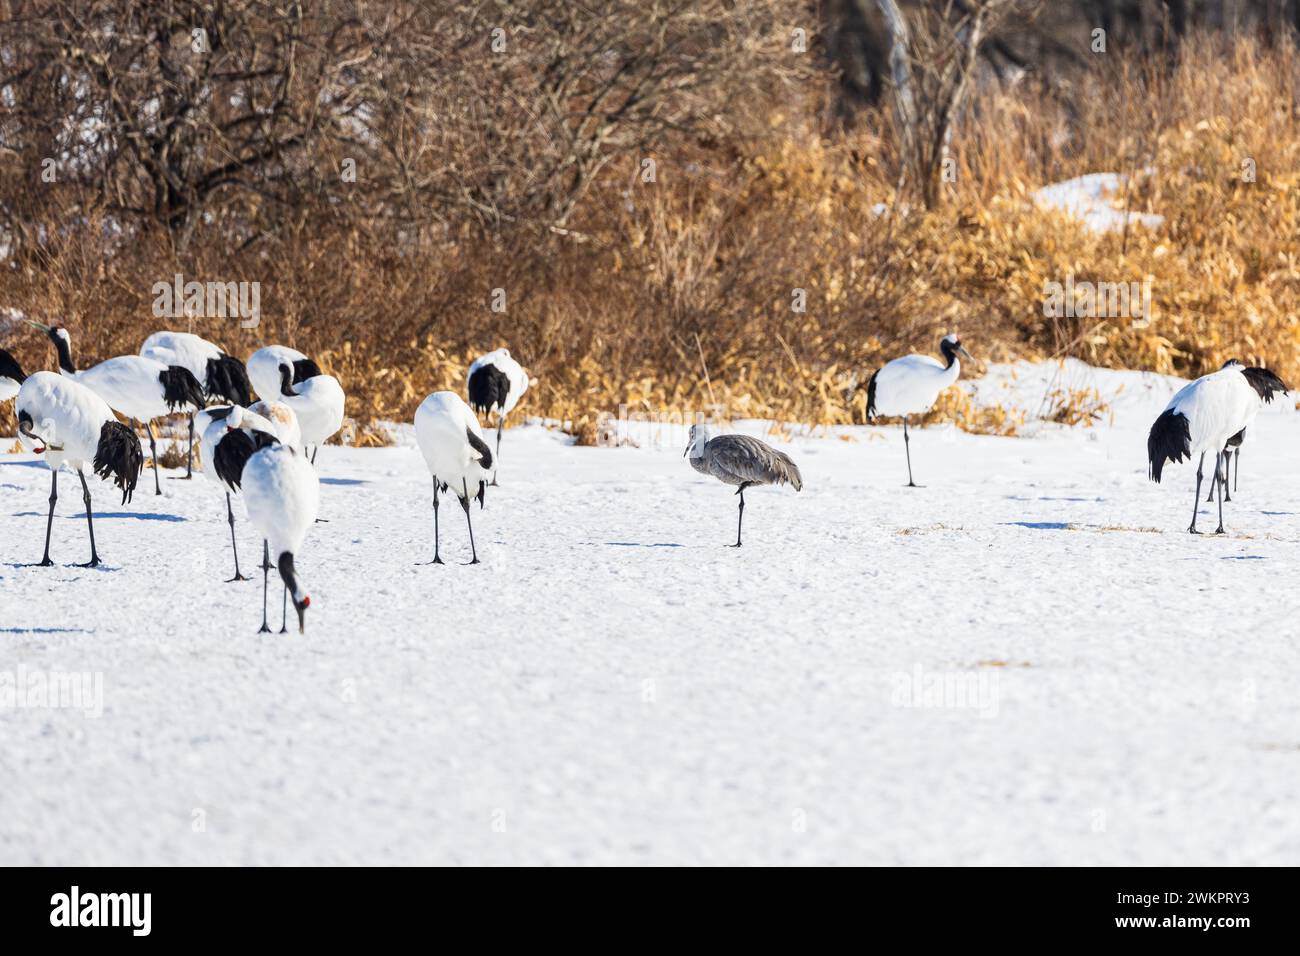 Sandhill crane (Antigone canadiensis), Hokkaido, winter, Japan Stock Photo